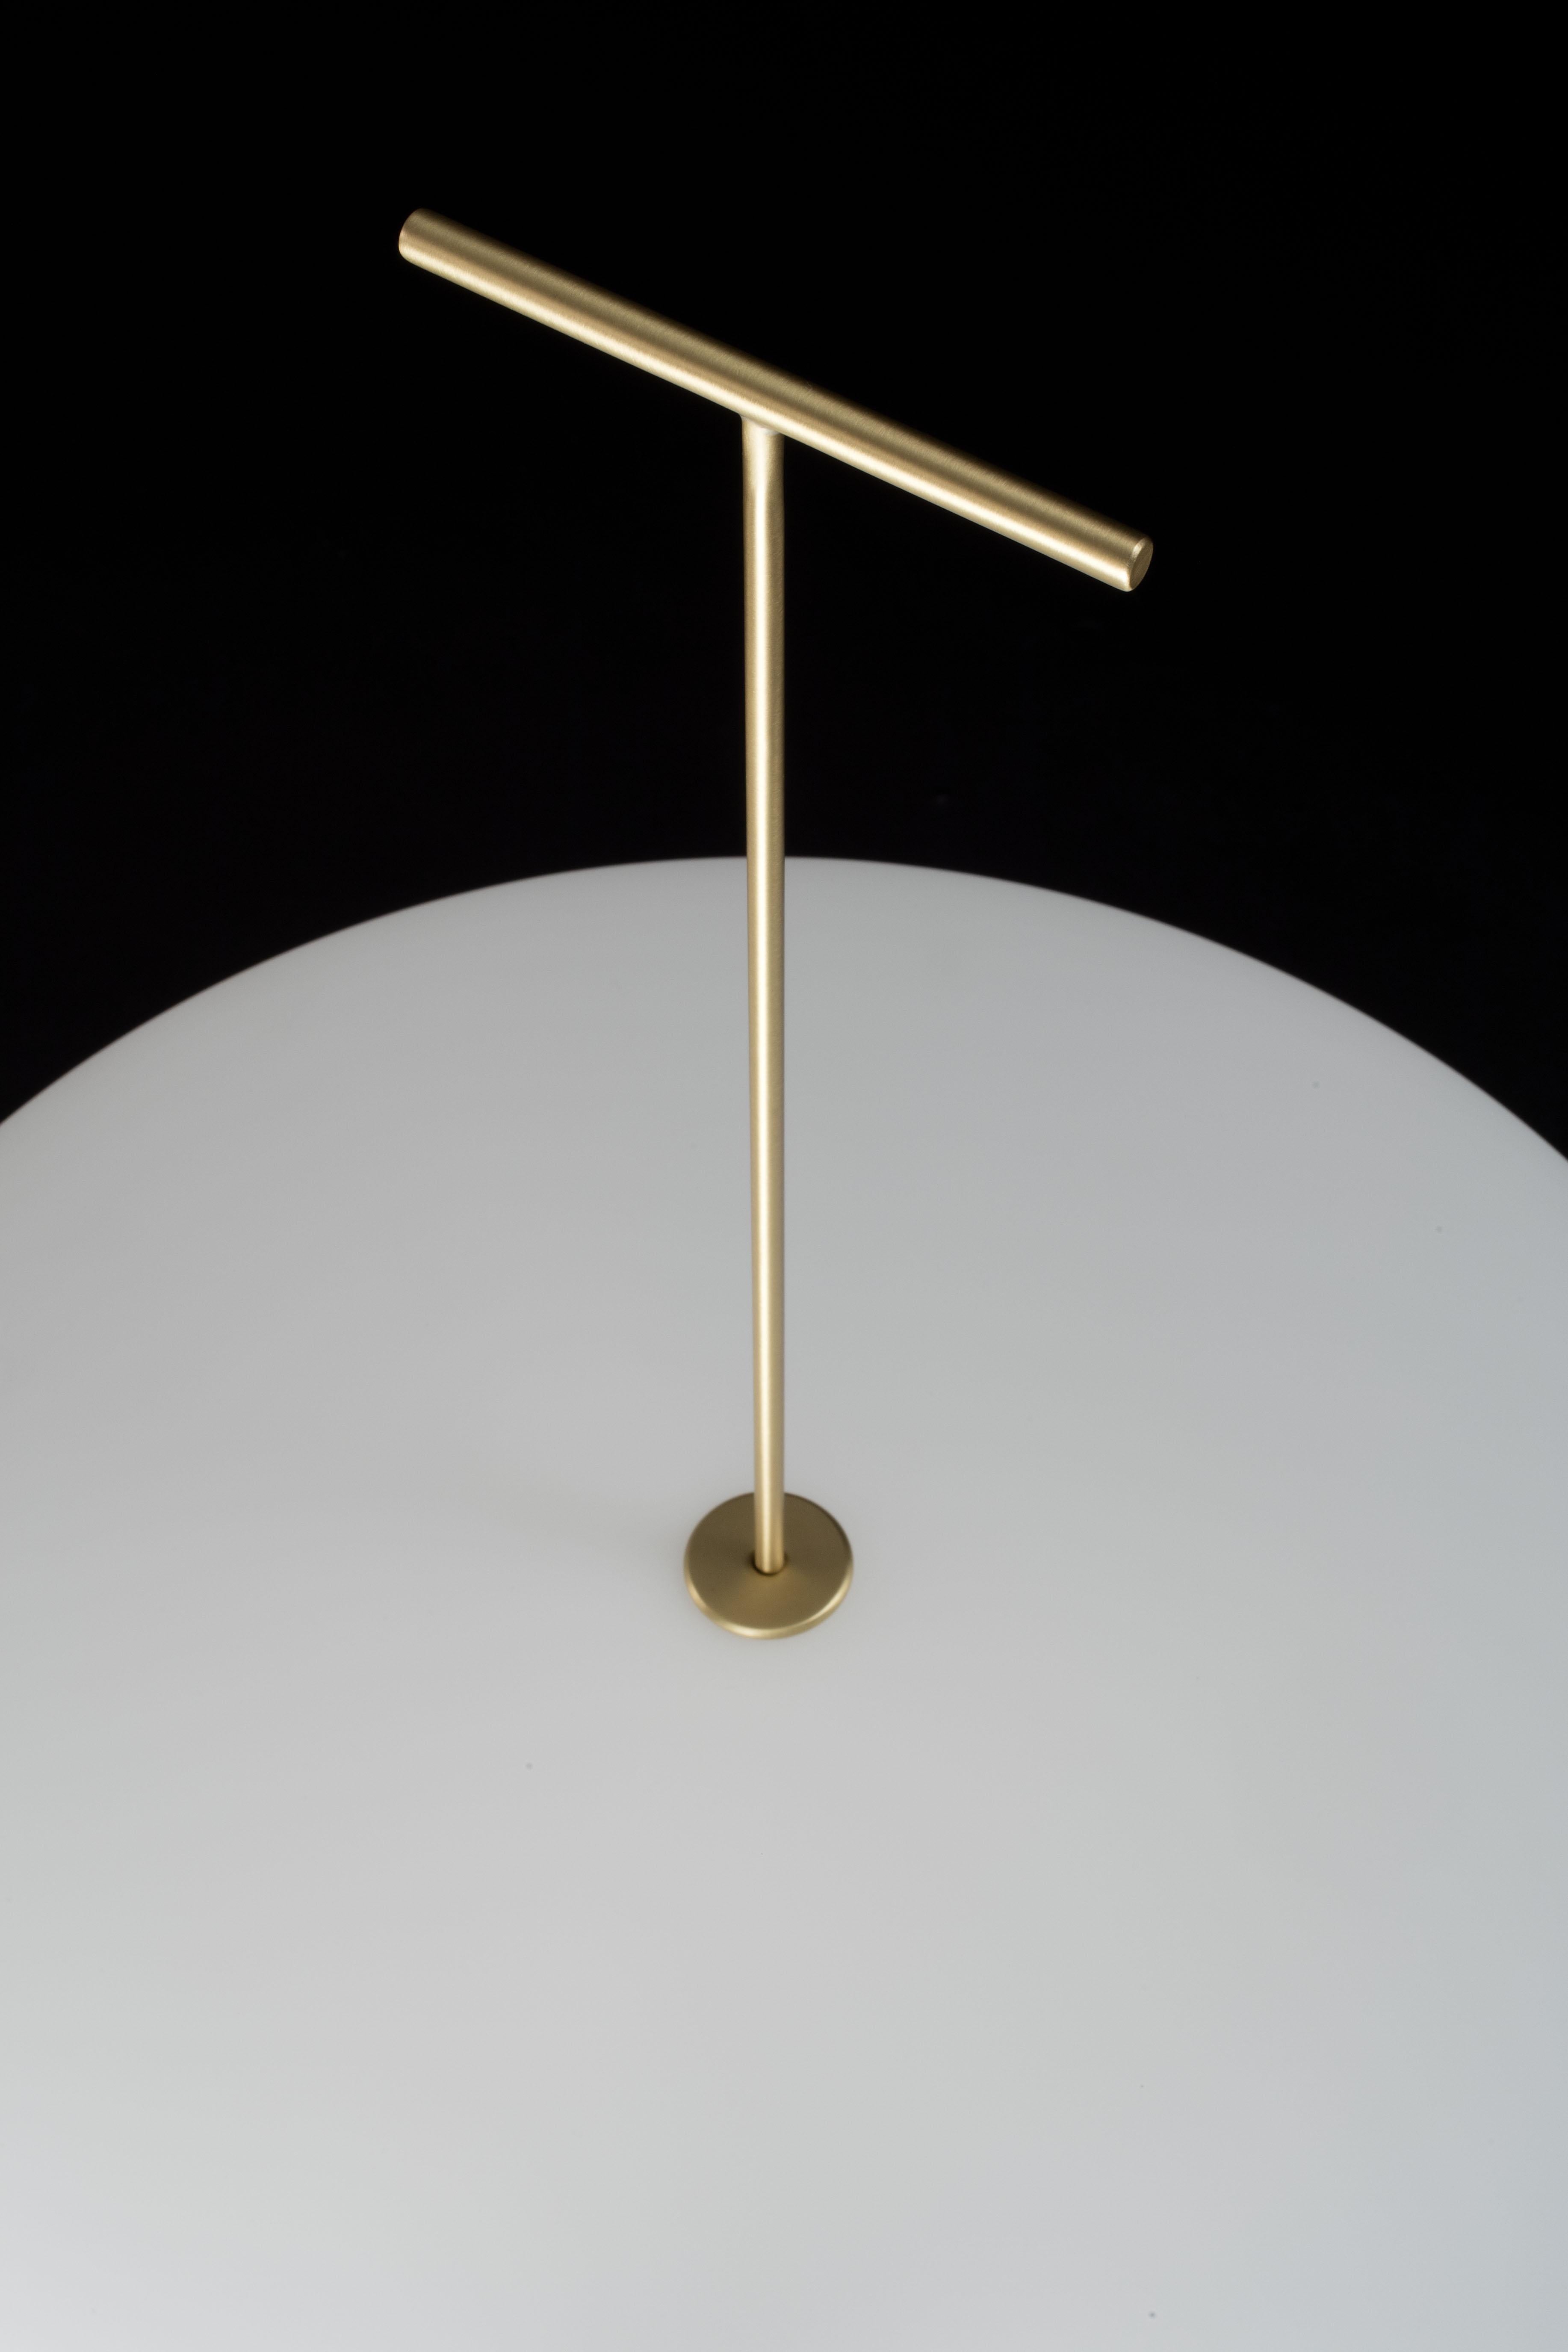 Contemporary Gio Ponti Luna Suspension Lamp in Nickel for Tato Italia For Sale